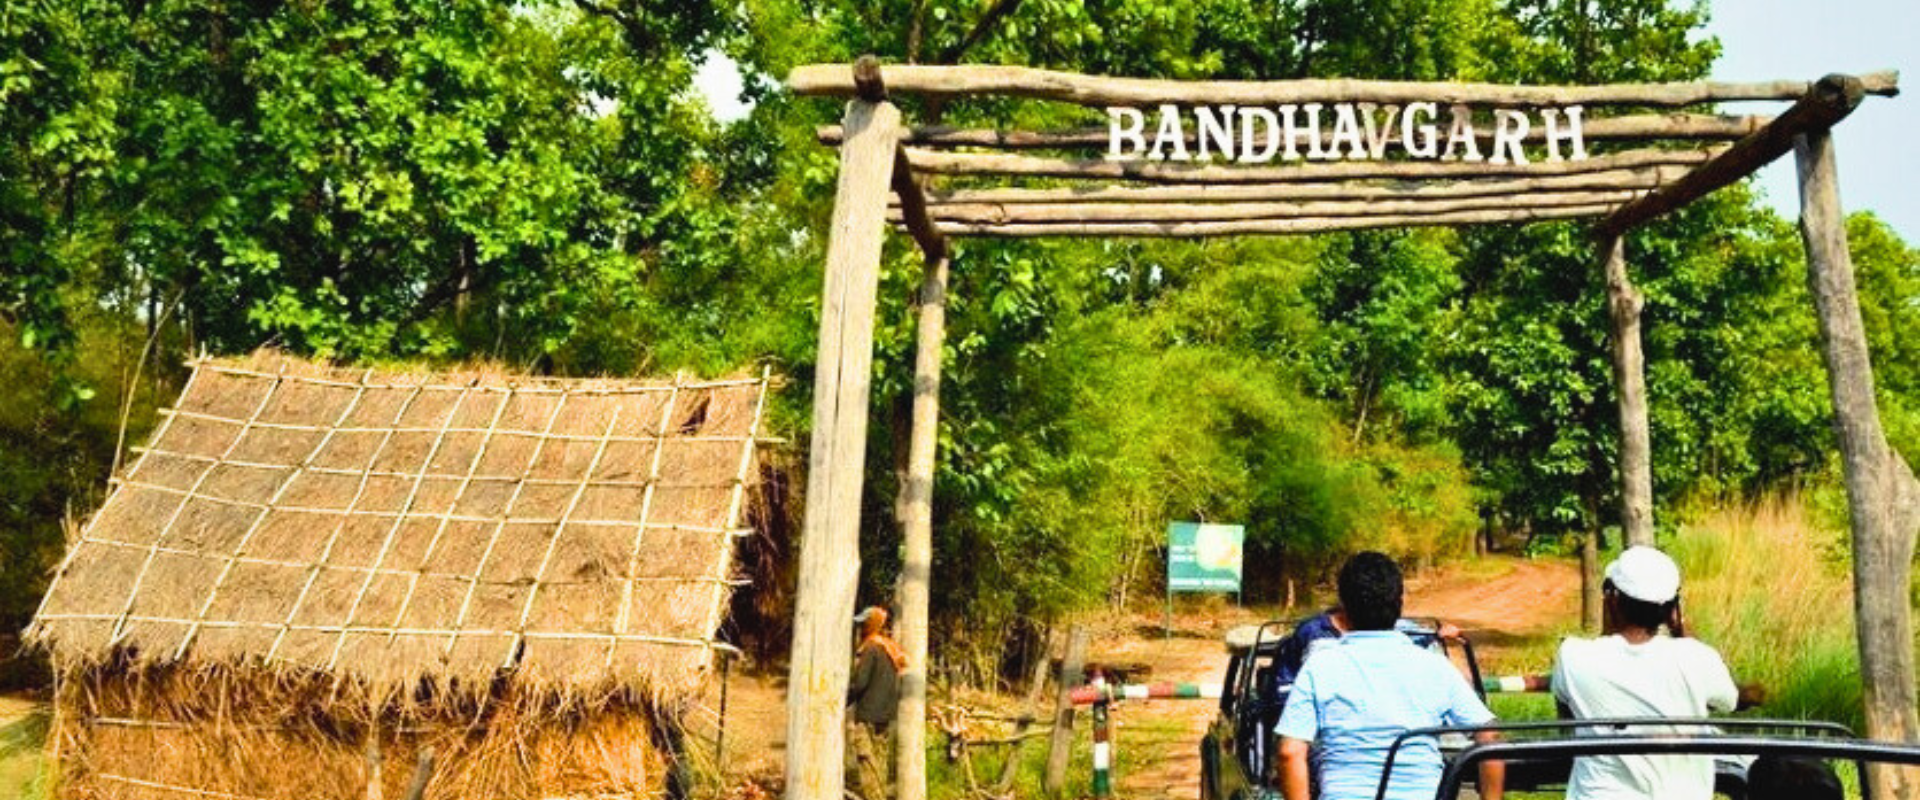 Bandhavgarh National Park | Bandhavgarh Booking Portal Online